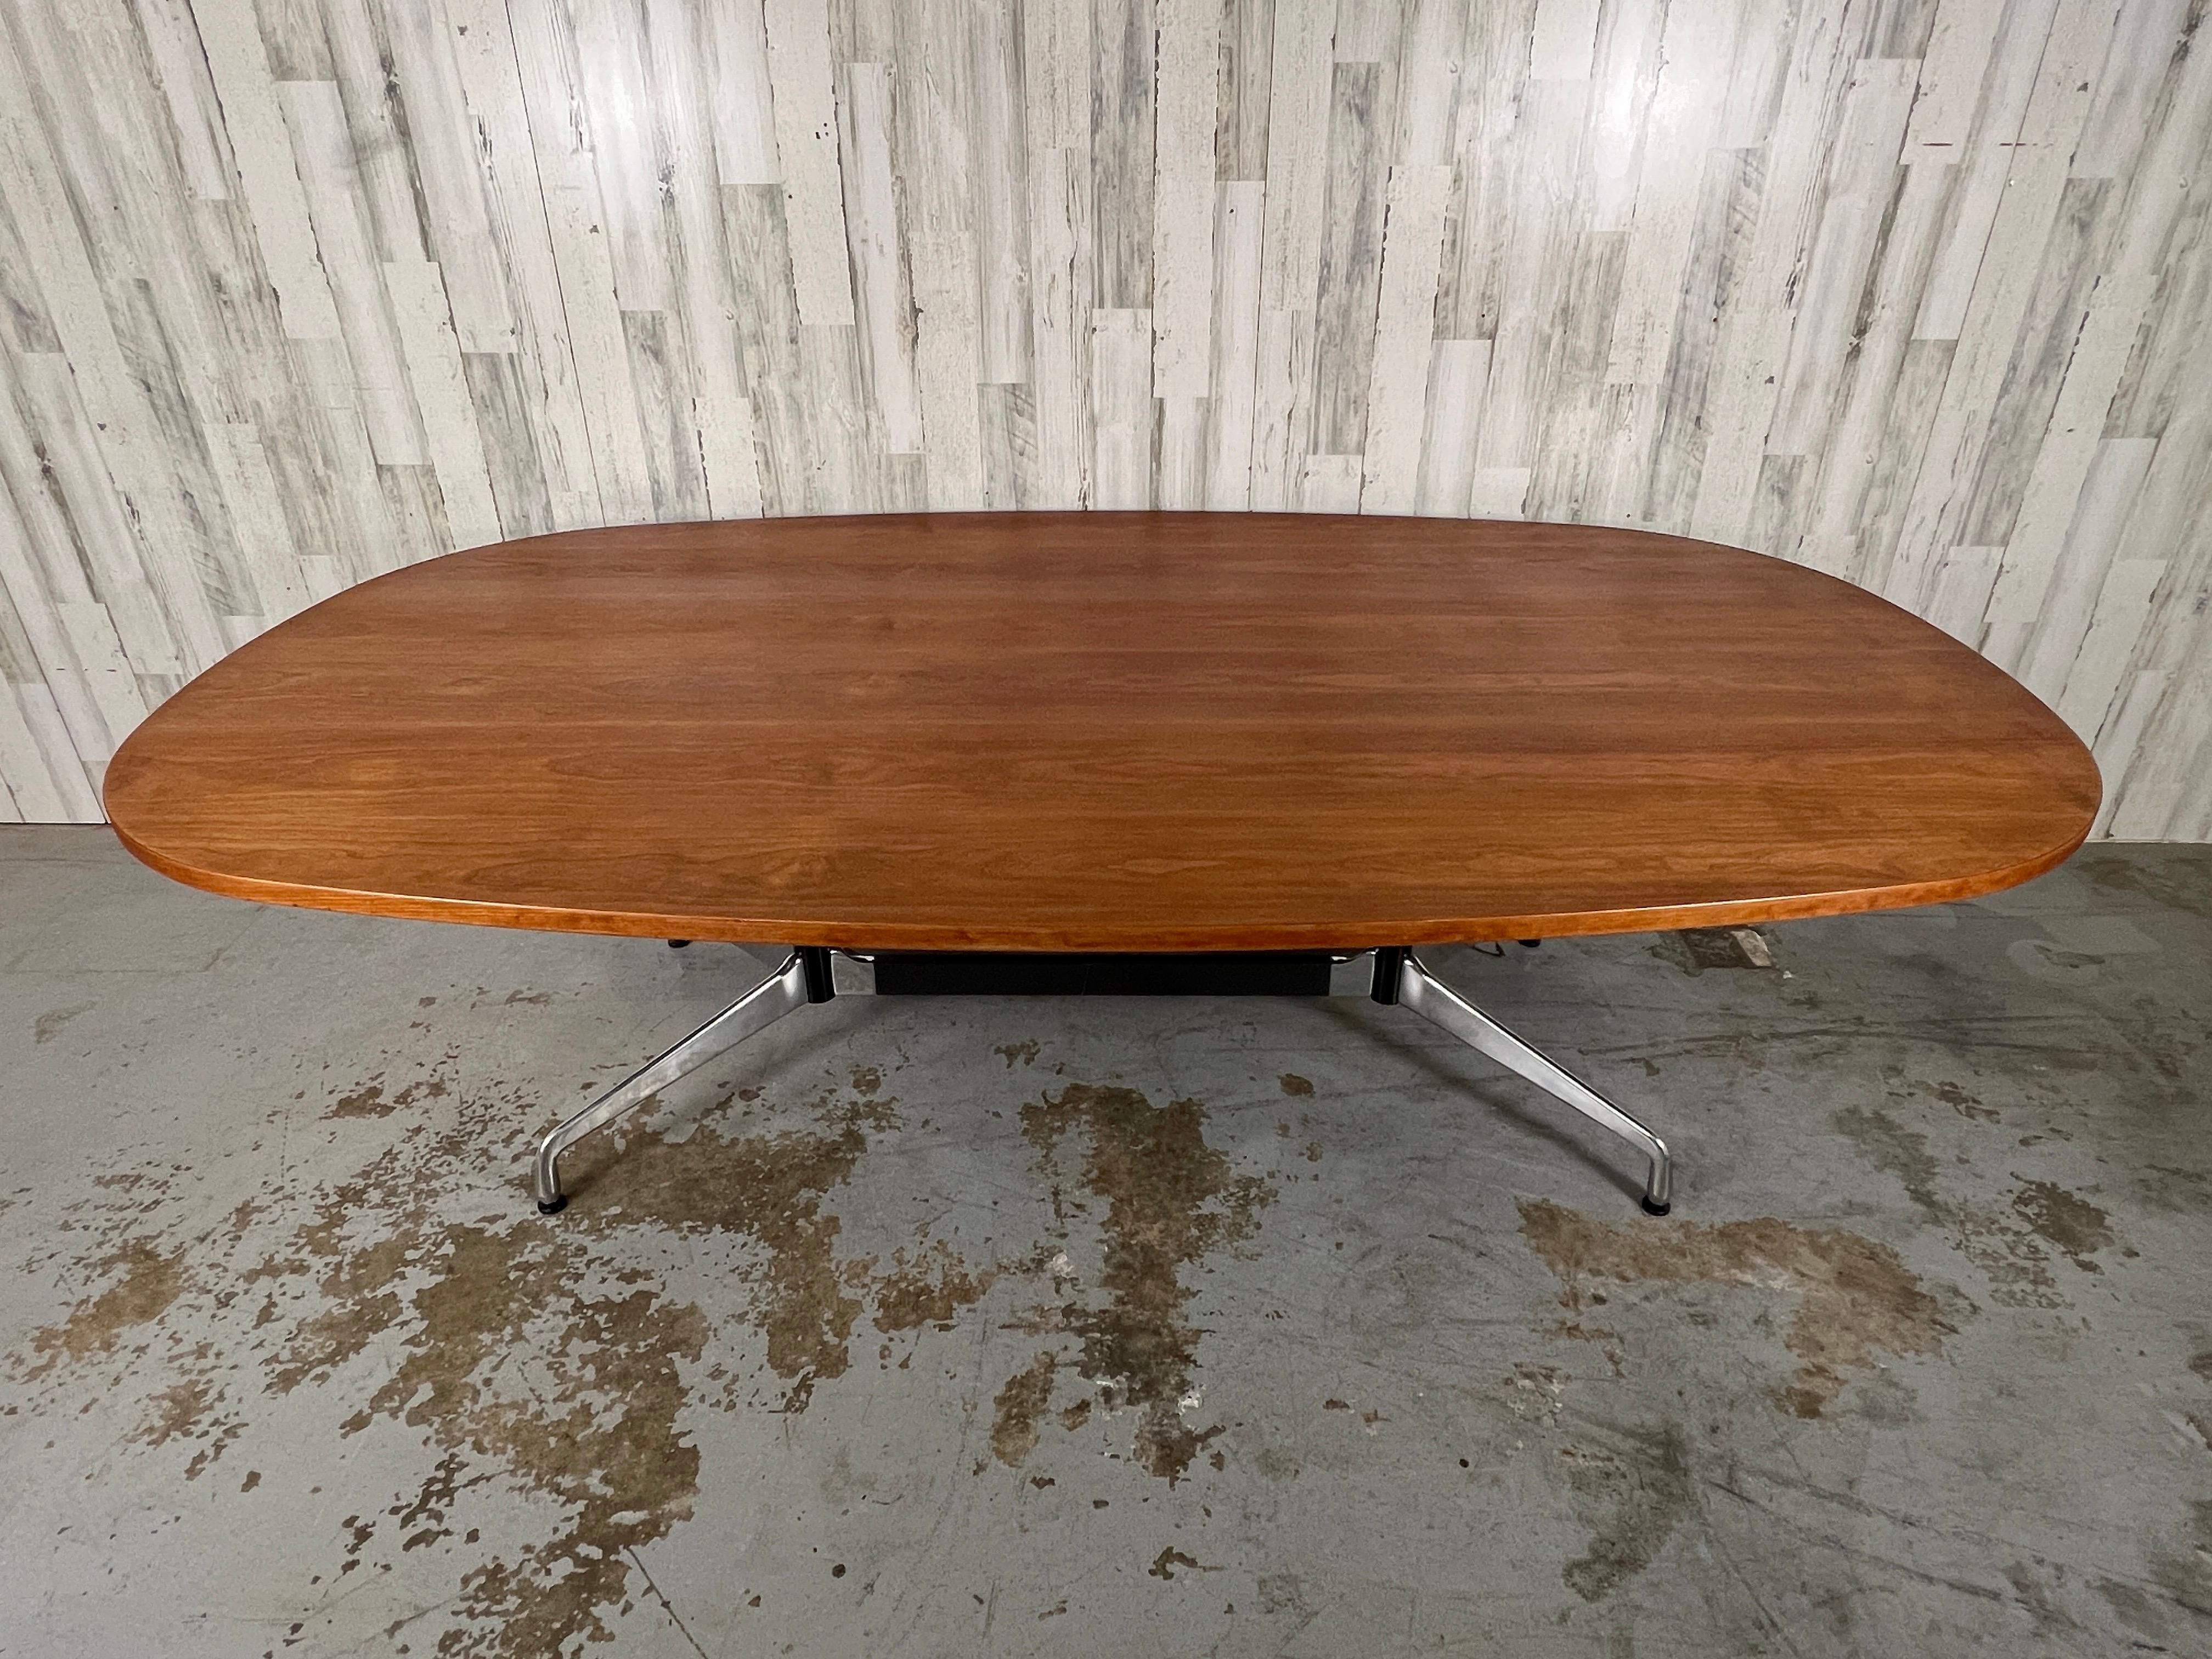 Klassisches Eames-Design für den Konferenz- und Esstisch von Herman Miller. Die Tischplatte aus Walnussholz und das Gestell aus Aluminiumguss machen diesen ikonischen Tisch sowohl für zu Hause als auch für das Büro geeignet.


Abmessungen: Höhe: